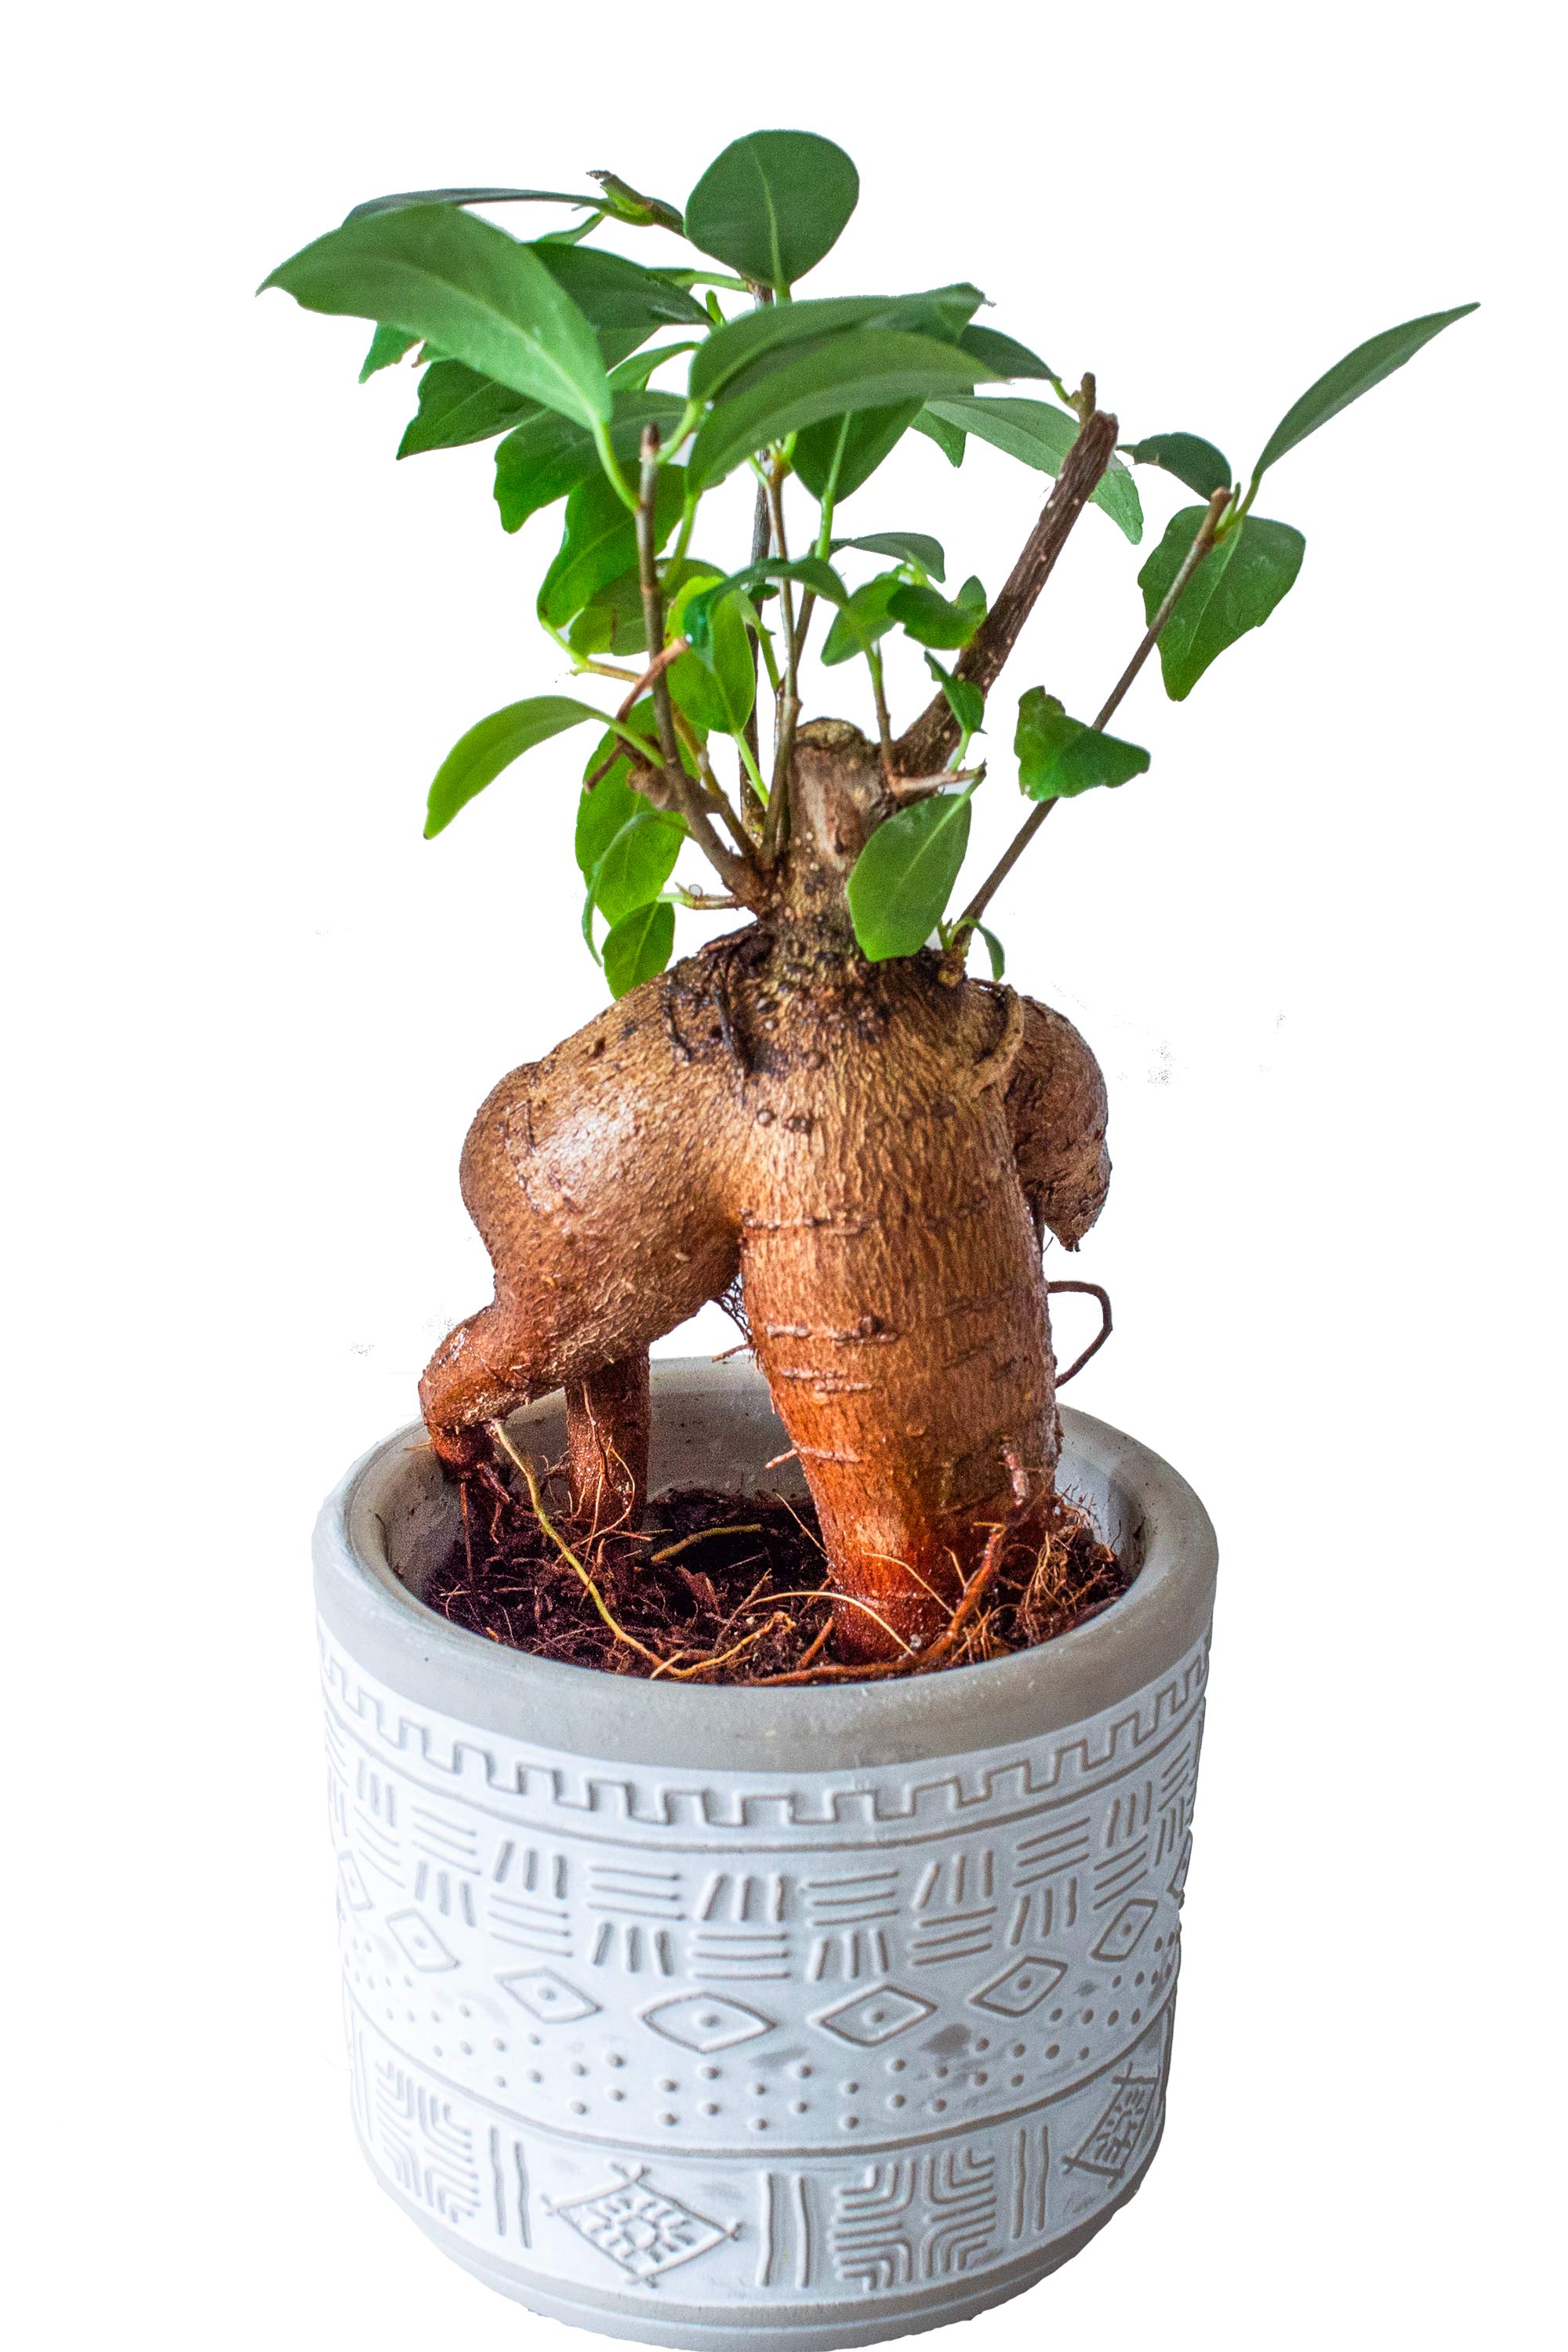 楽天miipasガジュマル 2号 陶器鉢 ミニ 観葉植物 本物 小さい 卓上 インテリア 玄関 トイレ 誕生日 還暦 お祝い ギフト プレゼント